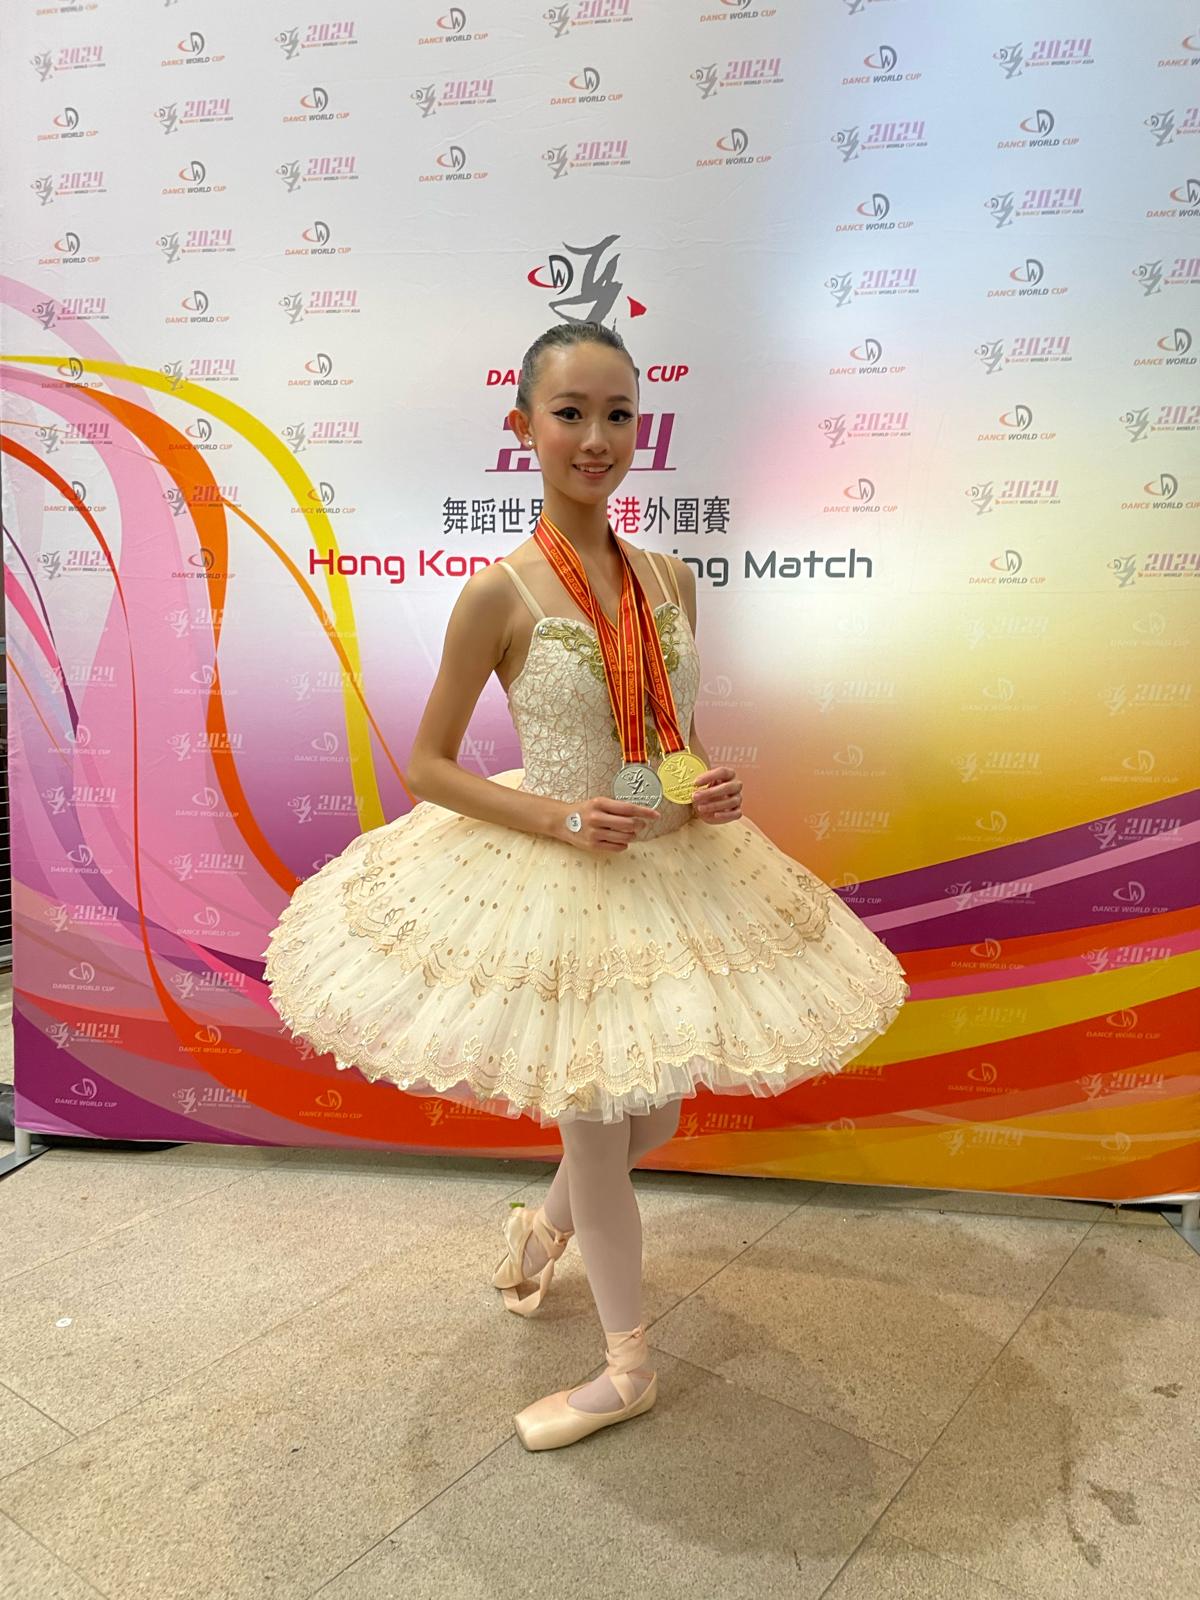 柏斯舞蹈學生於《DWC 舞蹈世界盃-香港外圍賽》勇奪佳績